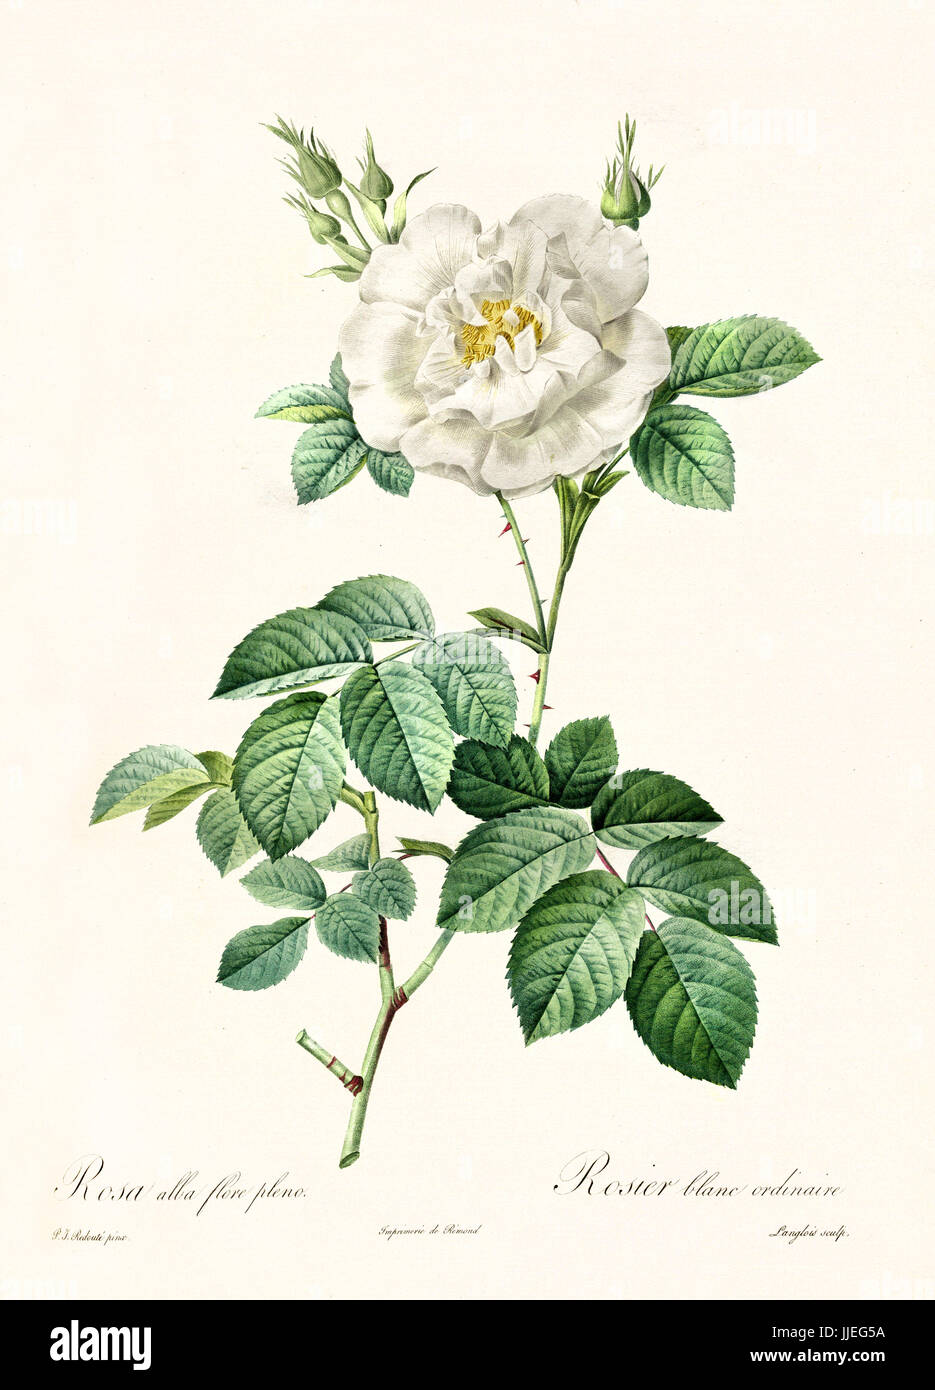 Vecchia illustrazione di Rosa alba flore pleno. Creato da P. R. Redoute, pubblicato su Les Roses, Imp. Firmin Didot, Parigi, 1817-24 Foto Stock